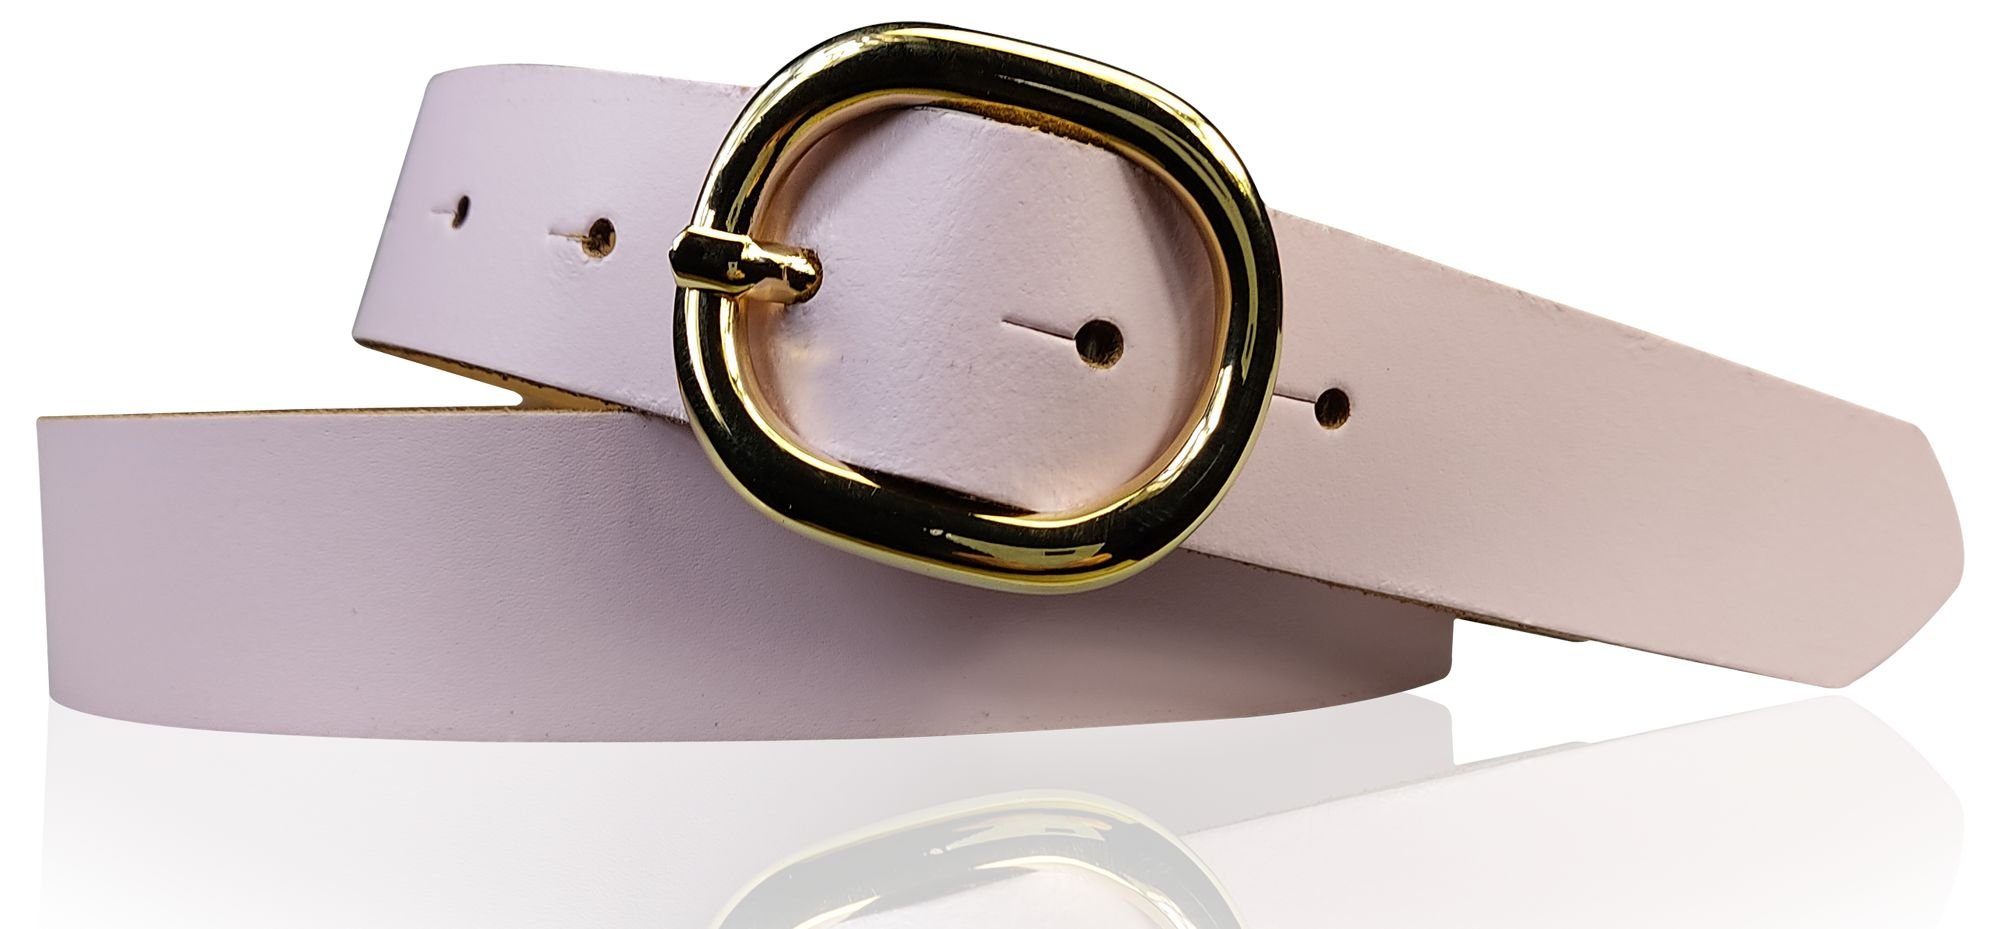 FRONHOFER Hüftgürtel 18621 Damengürtel 3 cm goldene ovale Schnalle, echt Ledergürtel plastikfrei Rosé